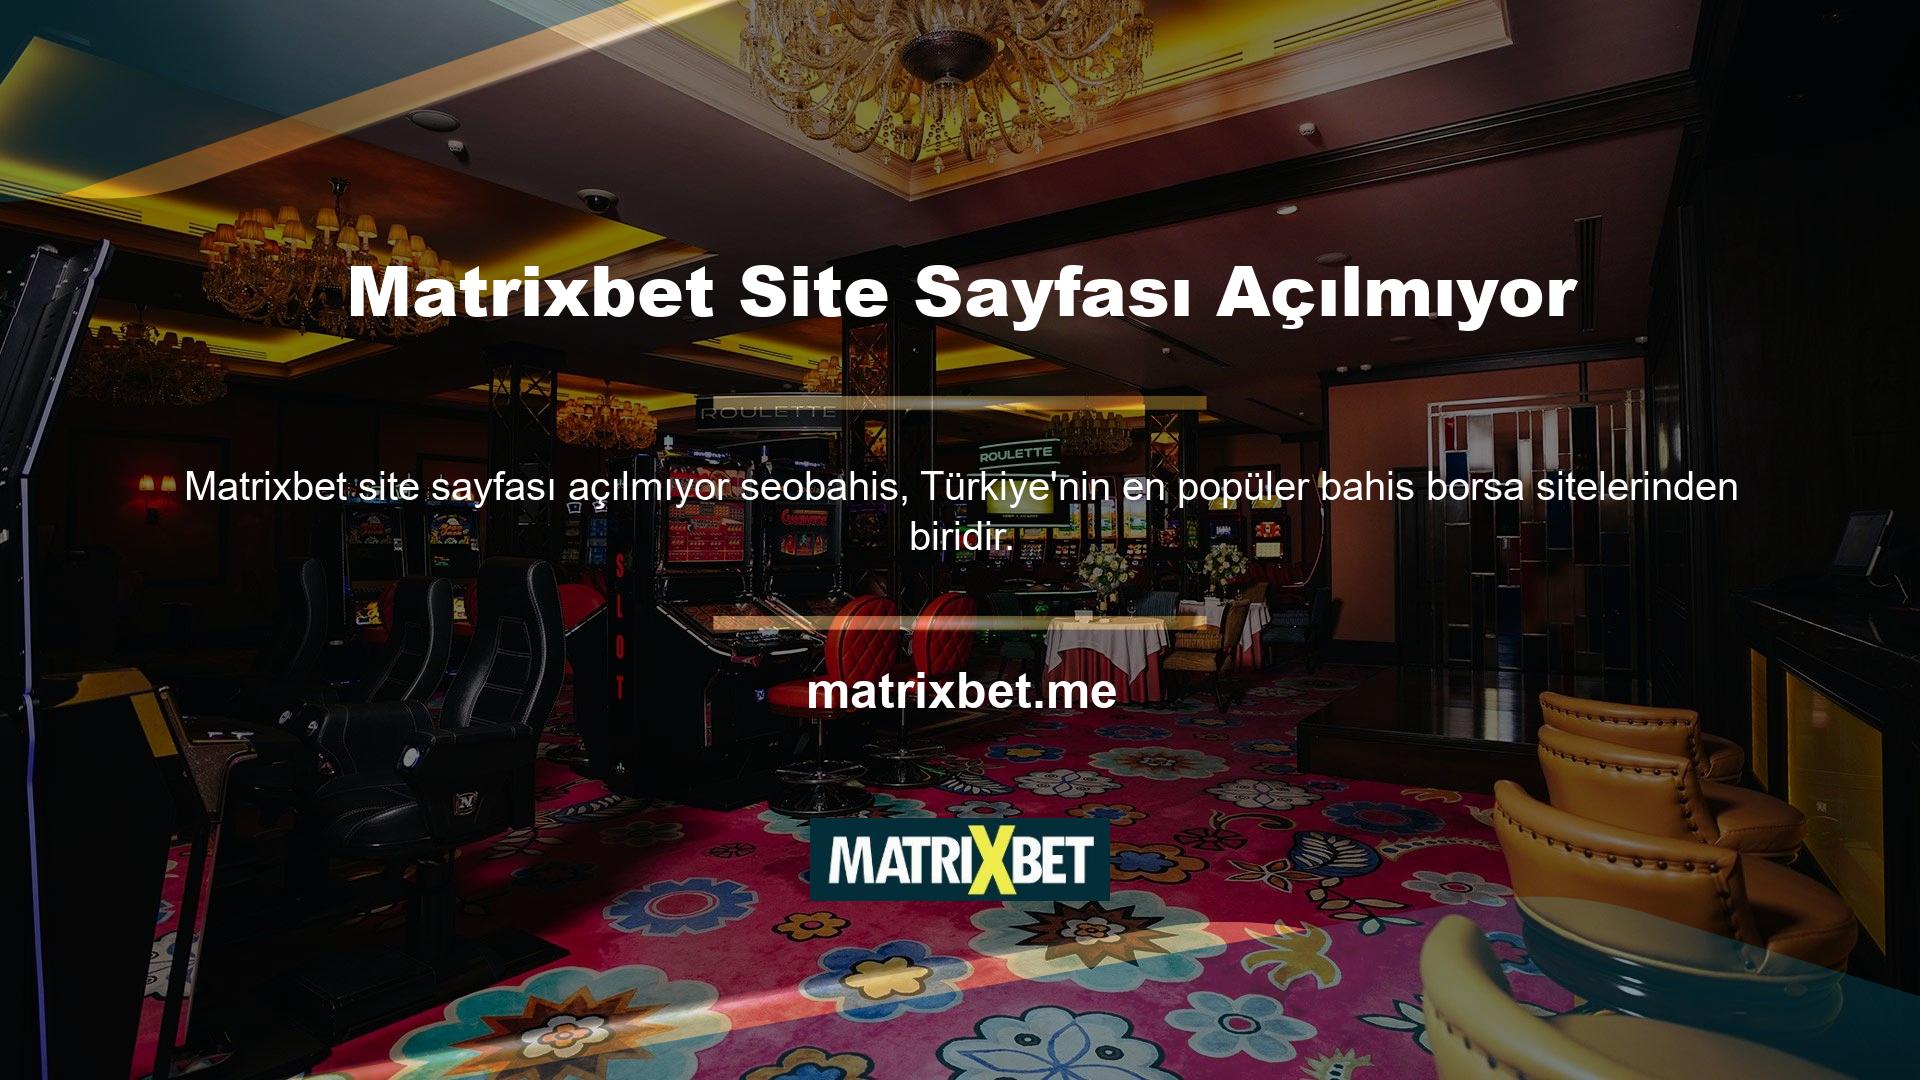 Matrixbet, dürüst ve adil casino anlayışı ve sunduğu oyun hizmetleriyle Türk müşterilerinin dikkatini çekse de son zamanlarda yabancı kullanıcılar tarafından da tanınmaya başlandı